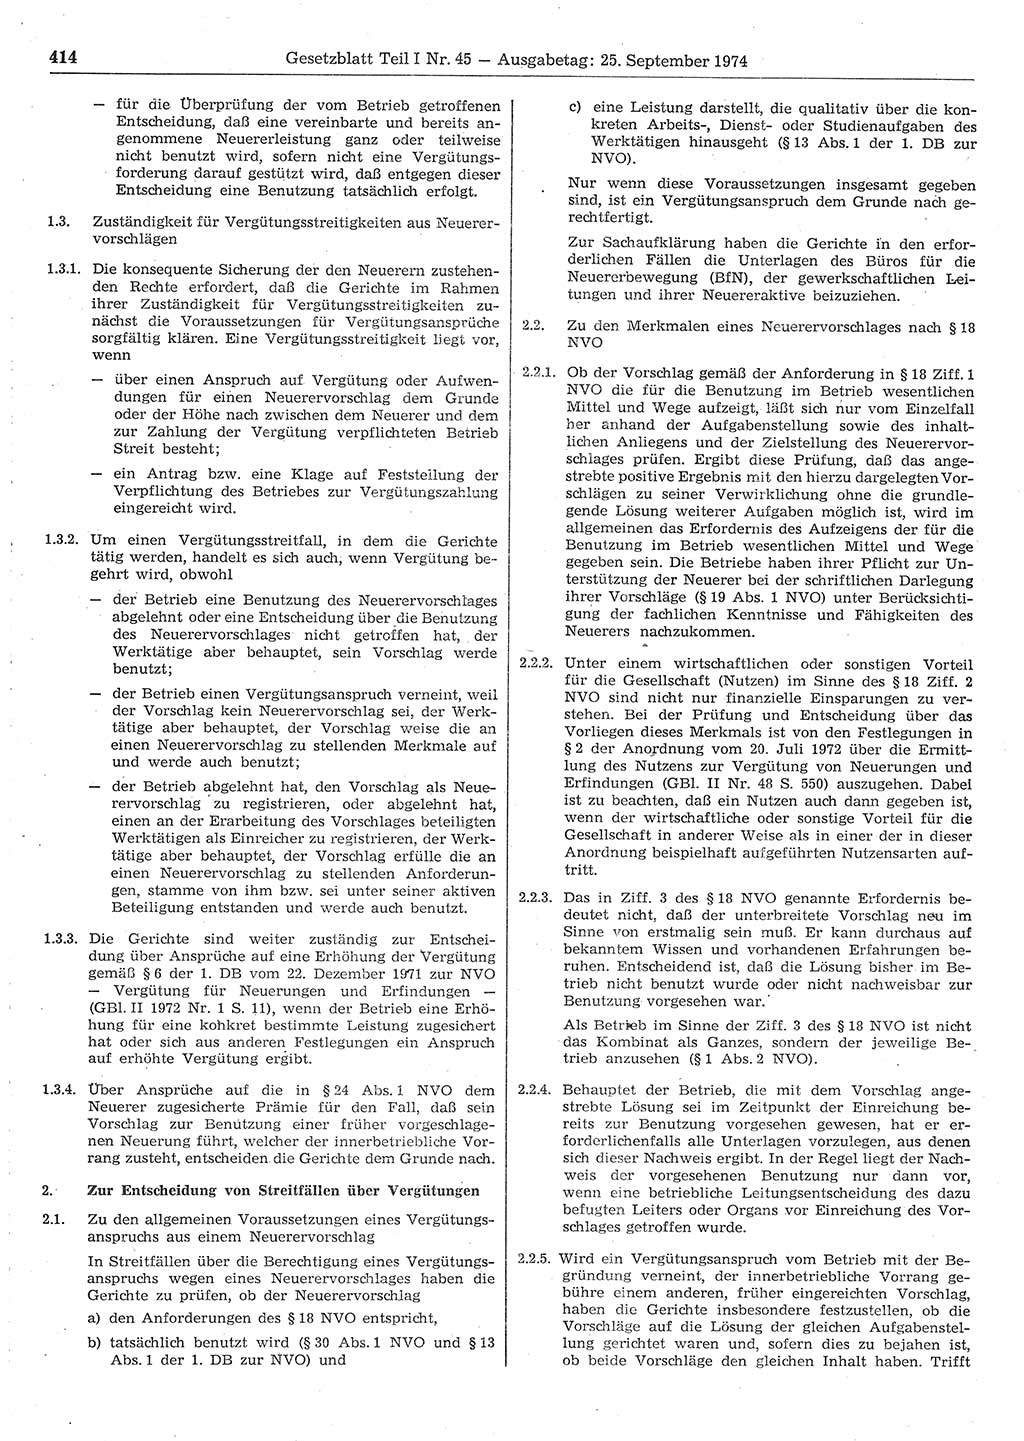 Gesetzblatt (GBl.) der Deutschen Demokratischen Republik (DDR) Teil Ⅰ 1974, Seite 414 (GBl. DDR Ⅰ 1974, S. 414)